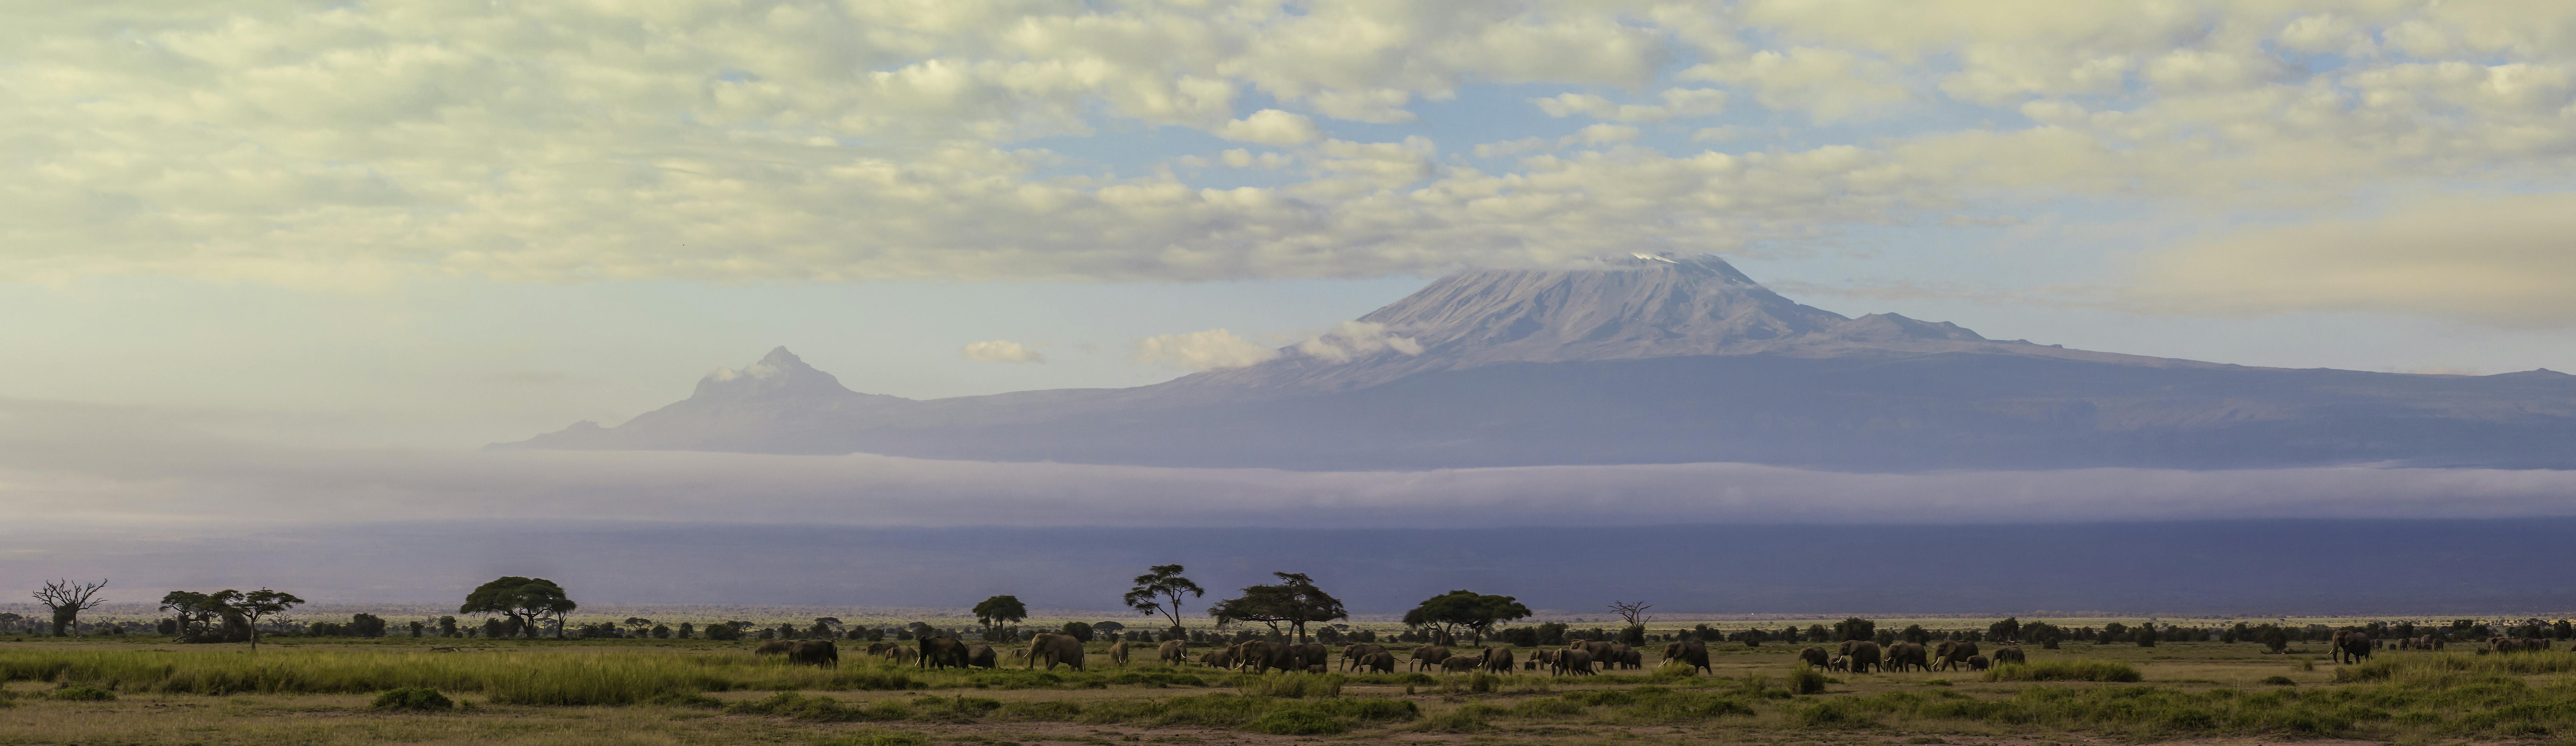 Caminhada de um dia no Monte Kilimanjaro saindo de Arusha